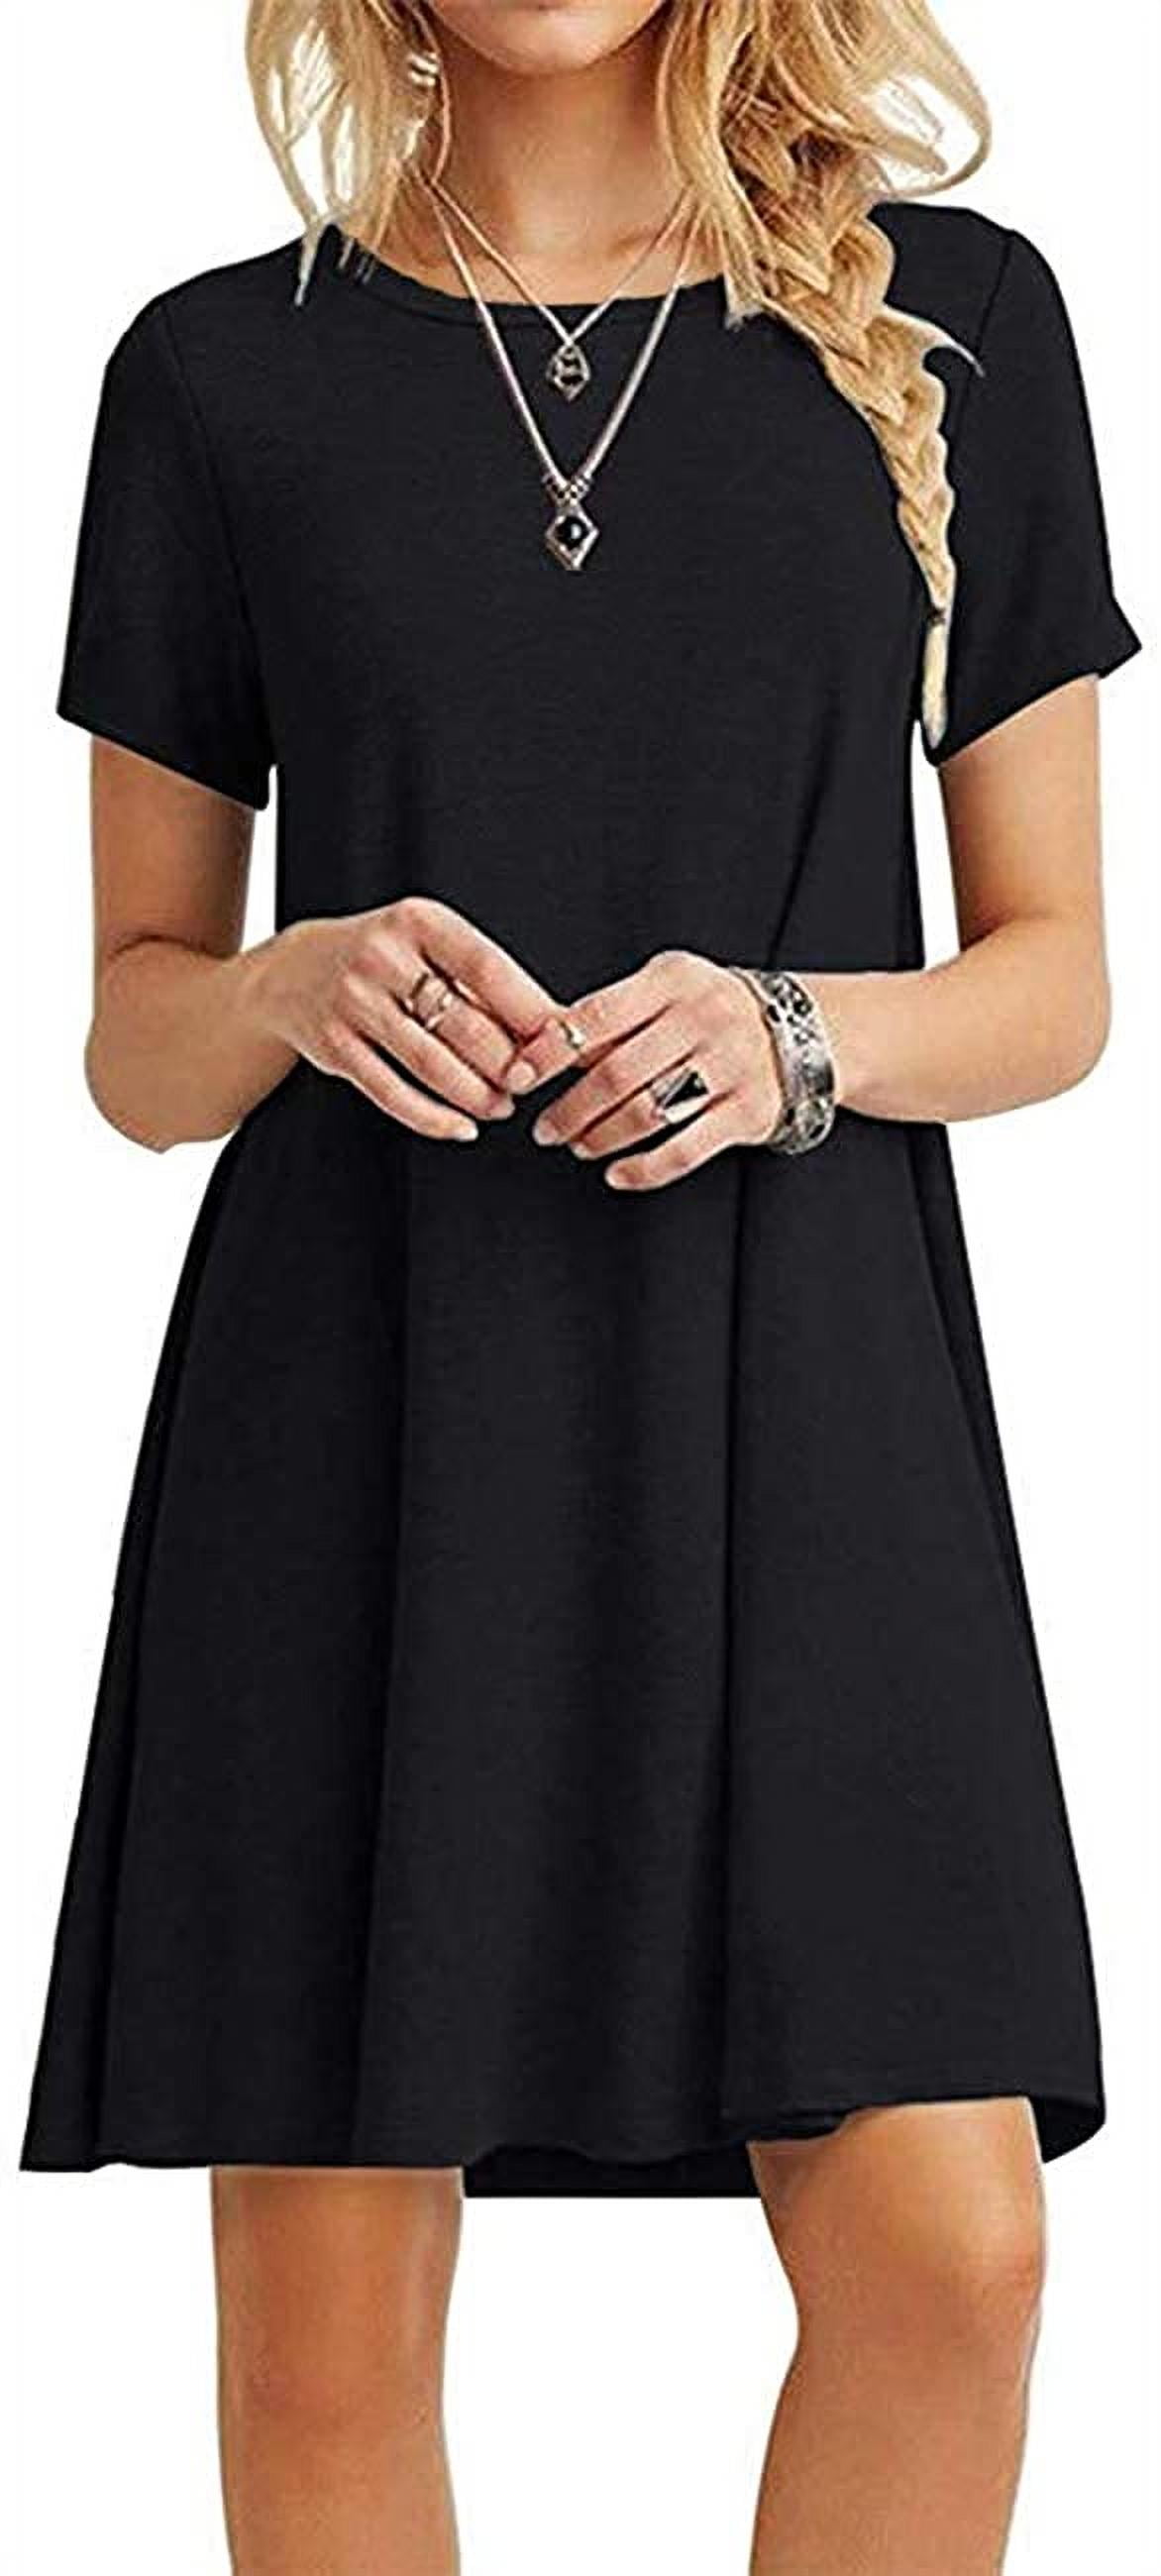 Women's Casual Dress Short Sleeves Knit T Shirt Swing Dress - Walmart.com